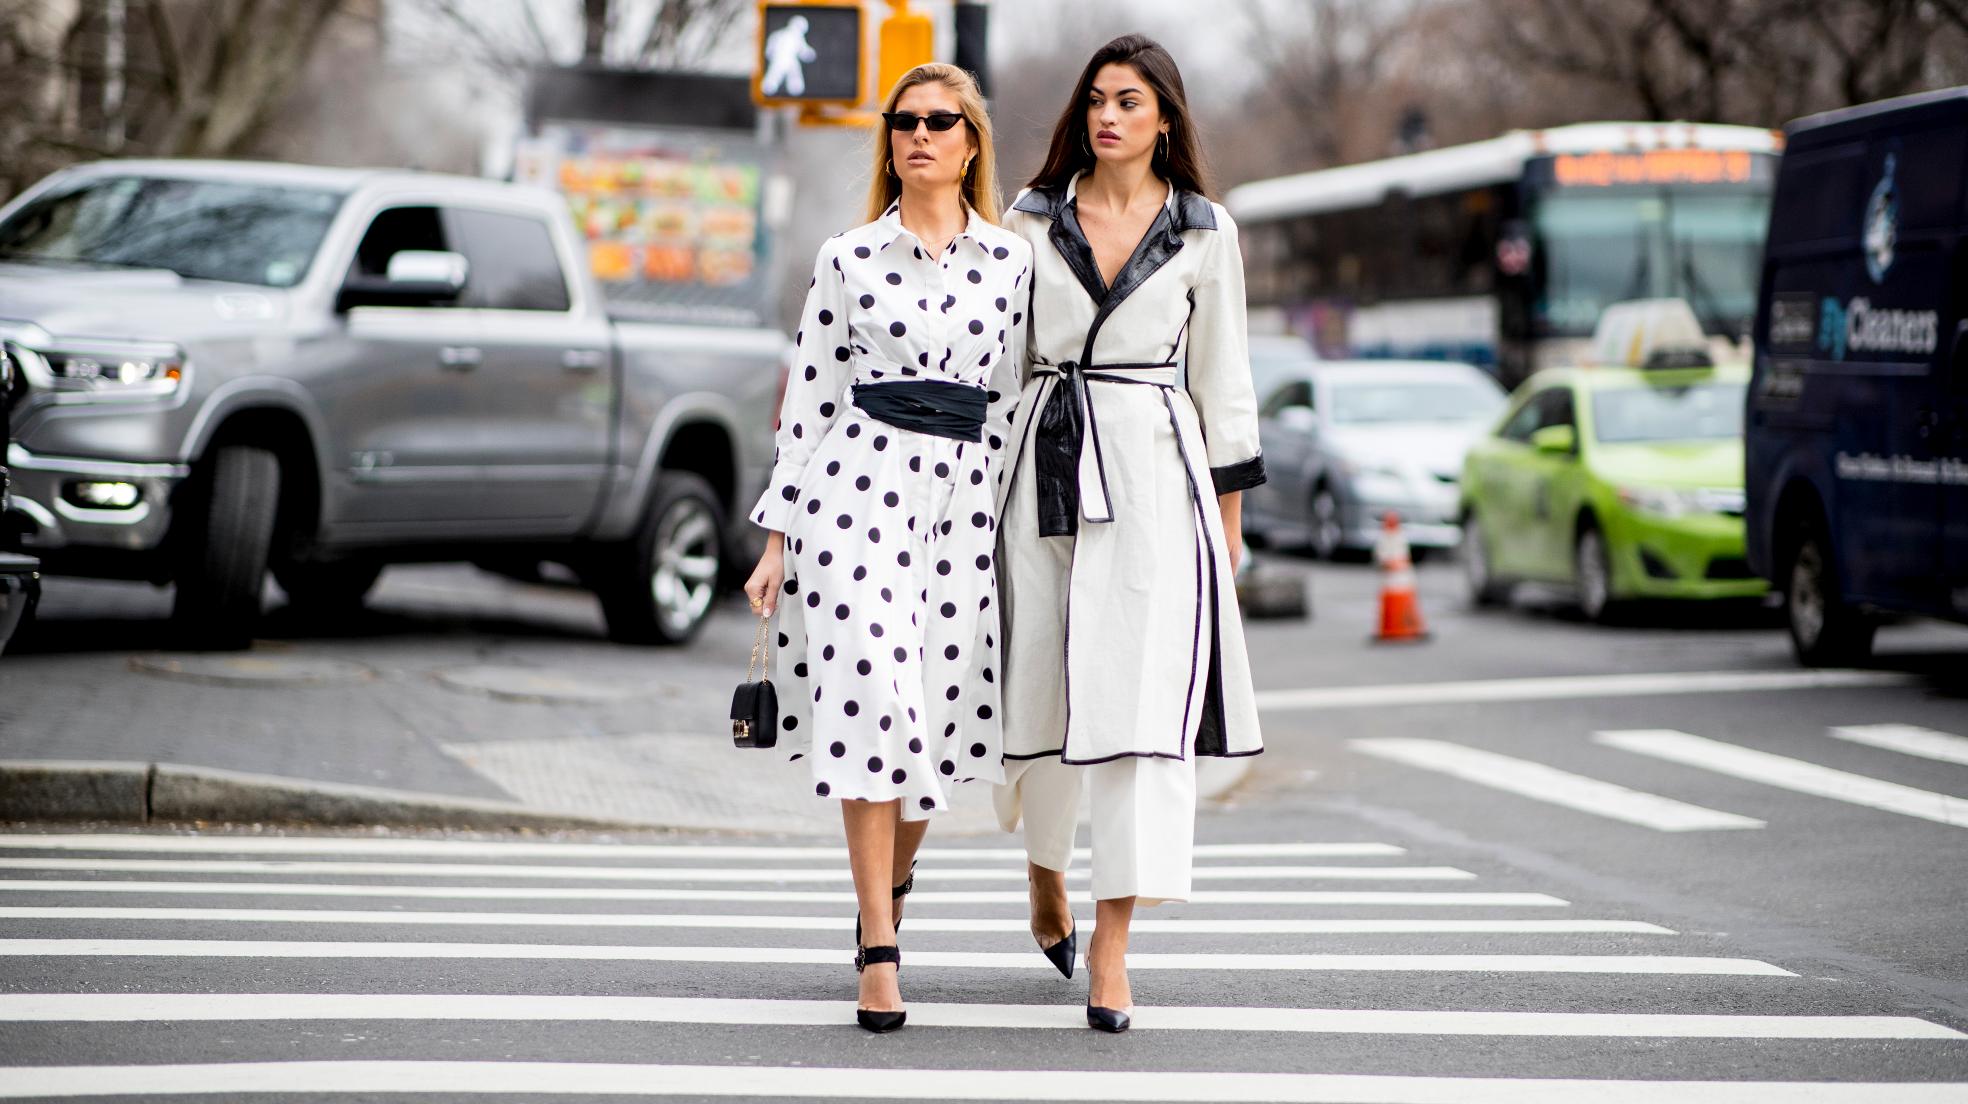 Los vestidos de lunares de la nueva colección de Zara van a arrasar en Instagram otros looks para sumarte a la | Mujer Hoy